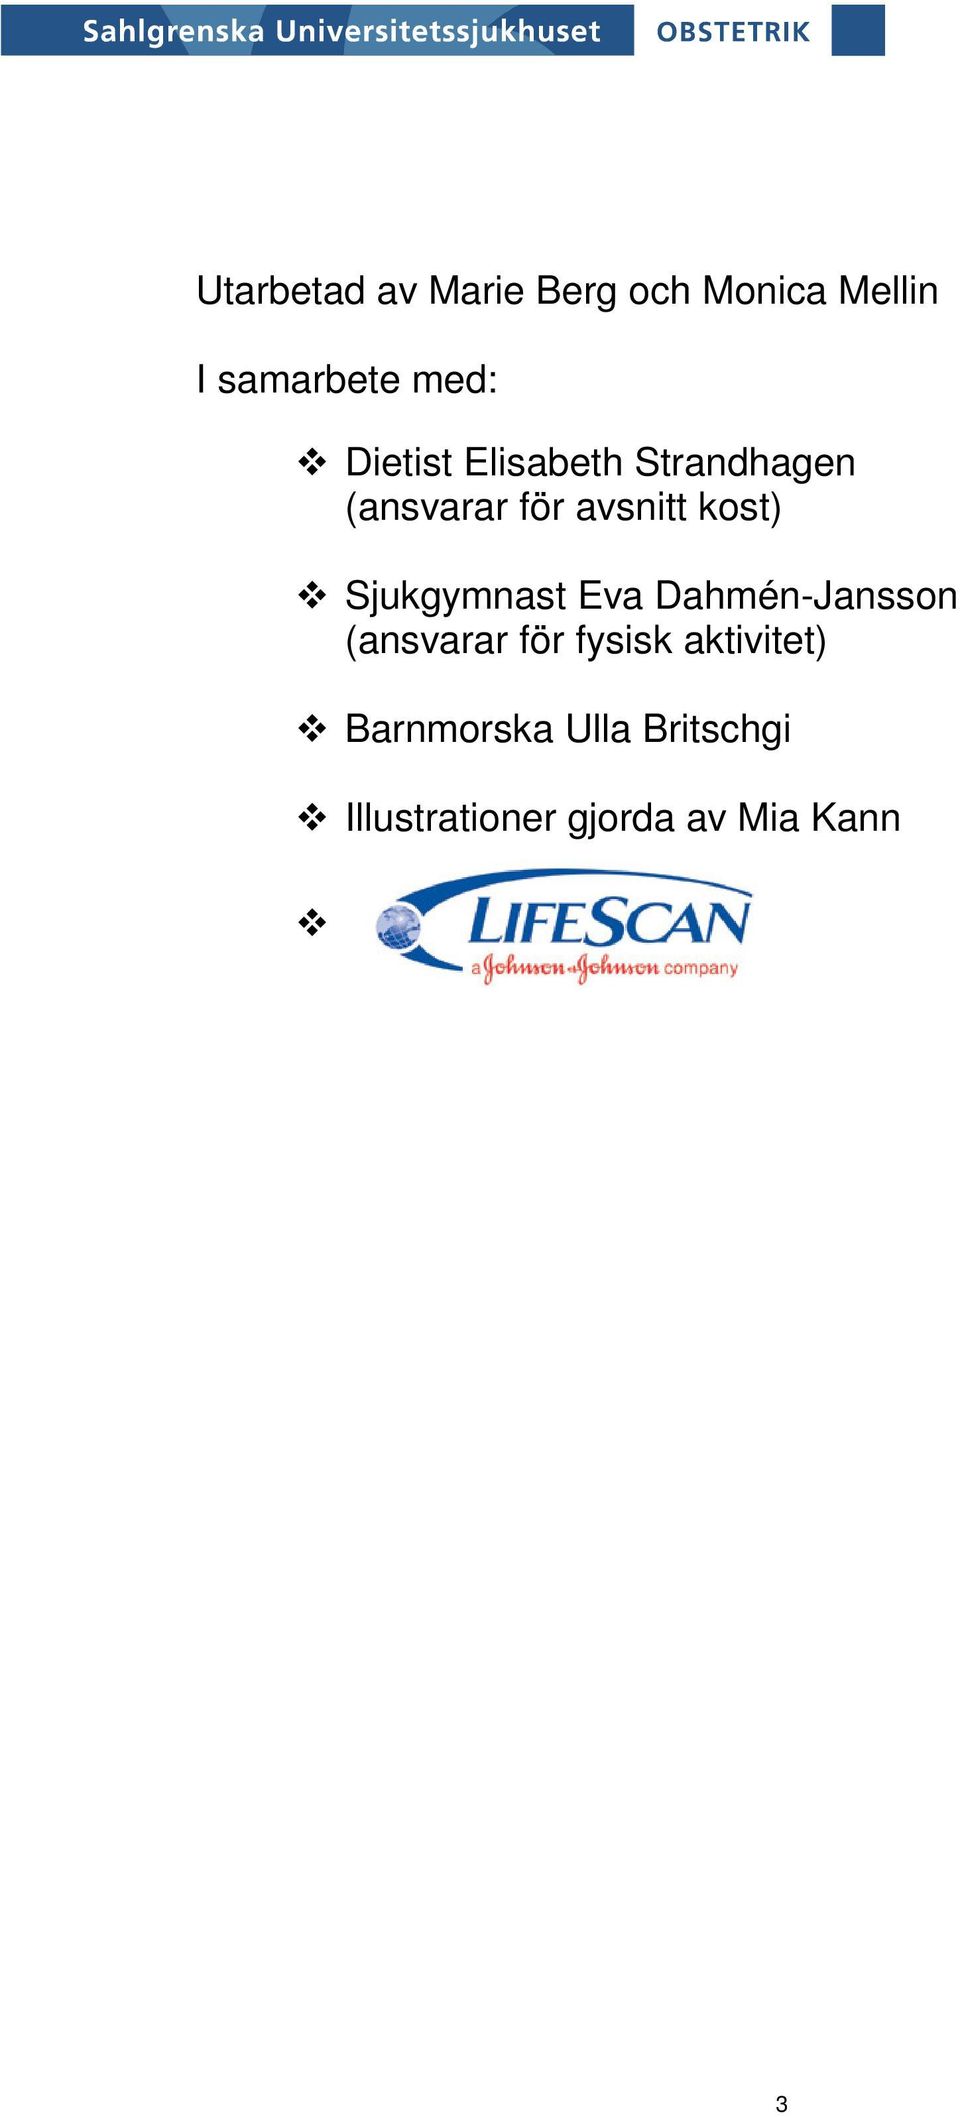 Sjukgymnast Eva Dahmén-Jansson (ansvarar för fysisk